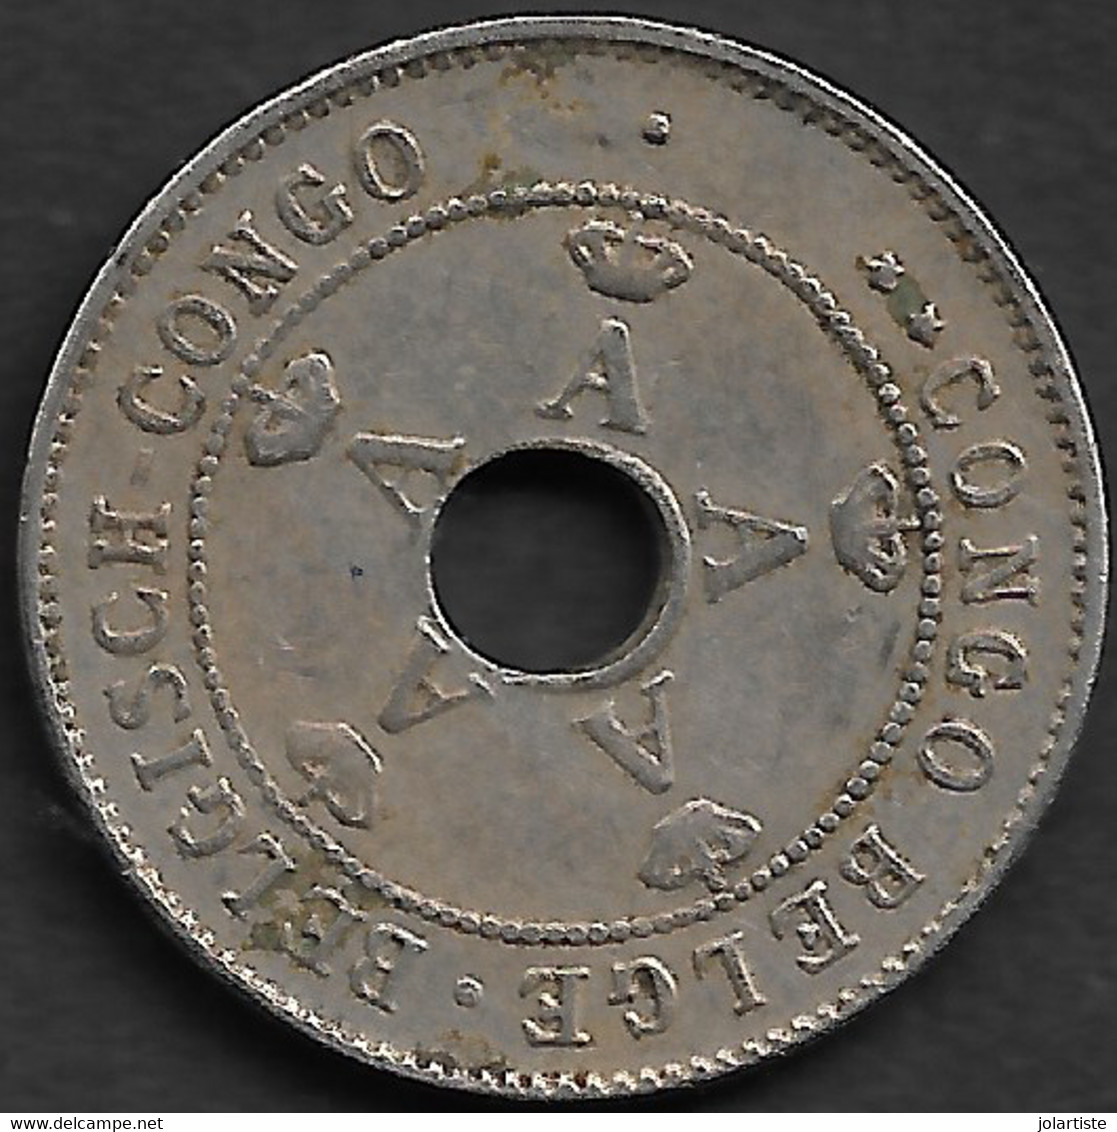 Monnaie Congo Belge 10 Centimes 1911  Diametre 22 Mm  Plat03 - 1945-1951: Régence